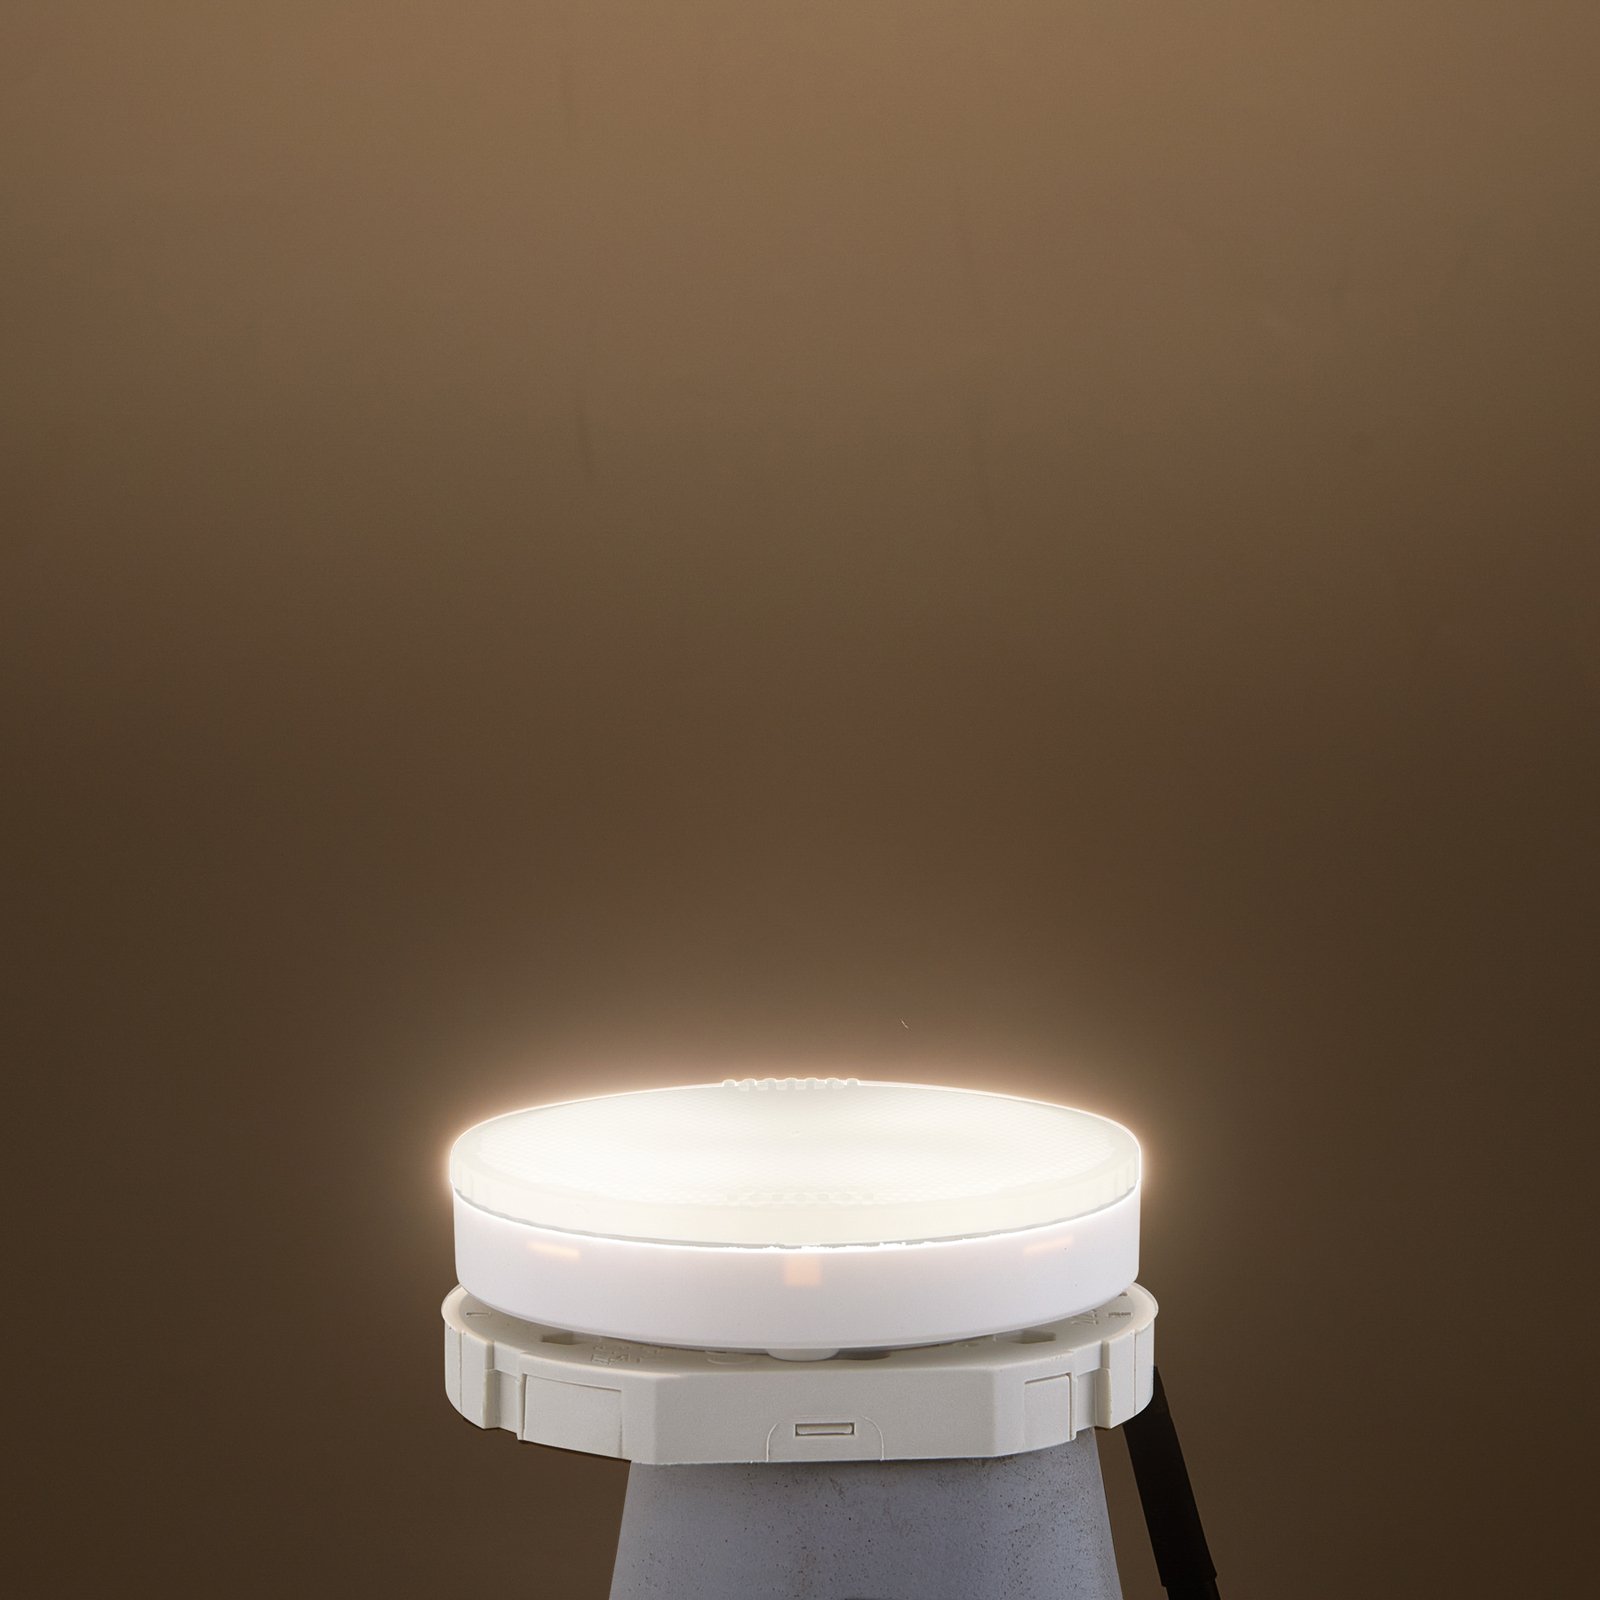 Arcchio LED лампа GX53 8W с възможност за димиране 3 000K